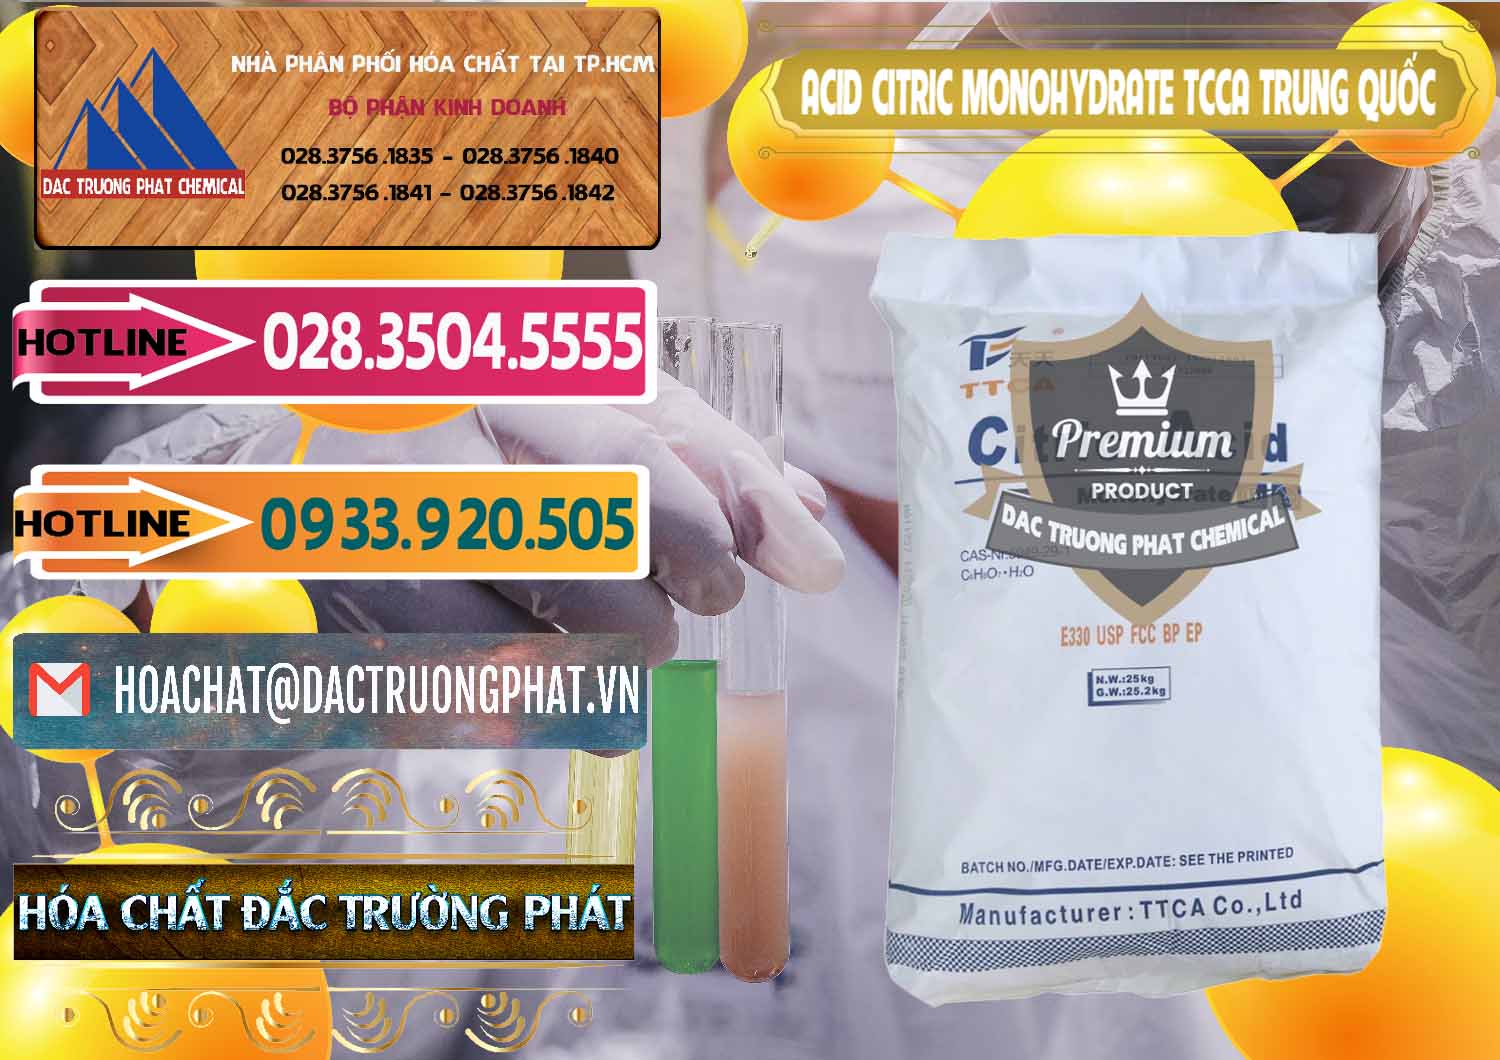 Phân phối ( bán ) Acid Citric - Axit Citric Monohydrate TCCA Trung Quốc China - 0441 - Chuyên phân phối ( kinh doanh ) hóa chất tại TP.HCM - dactruongphat.vn